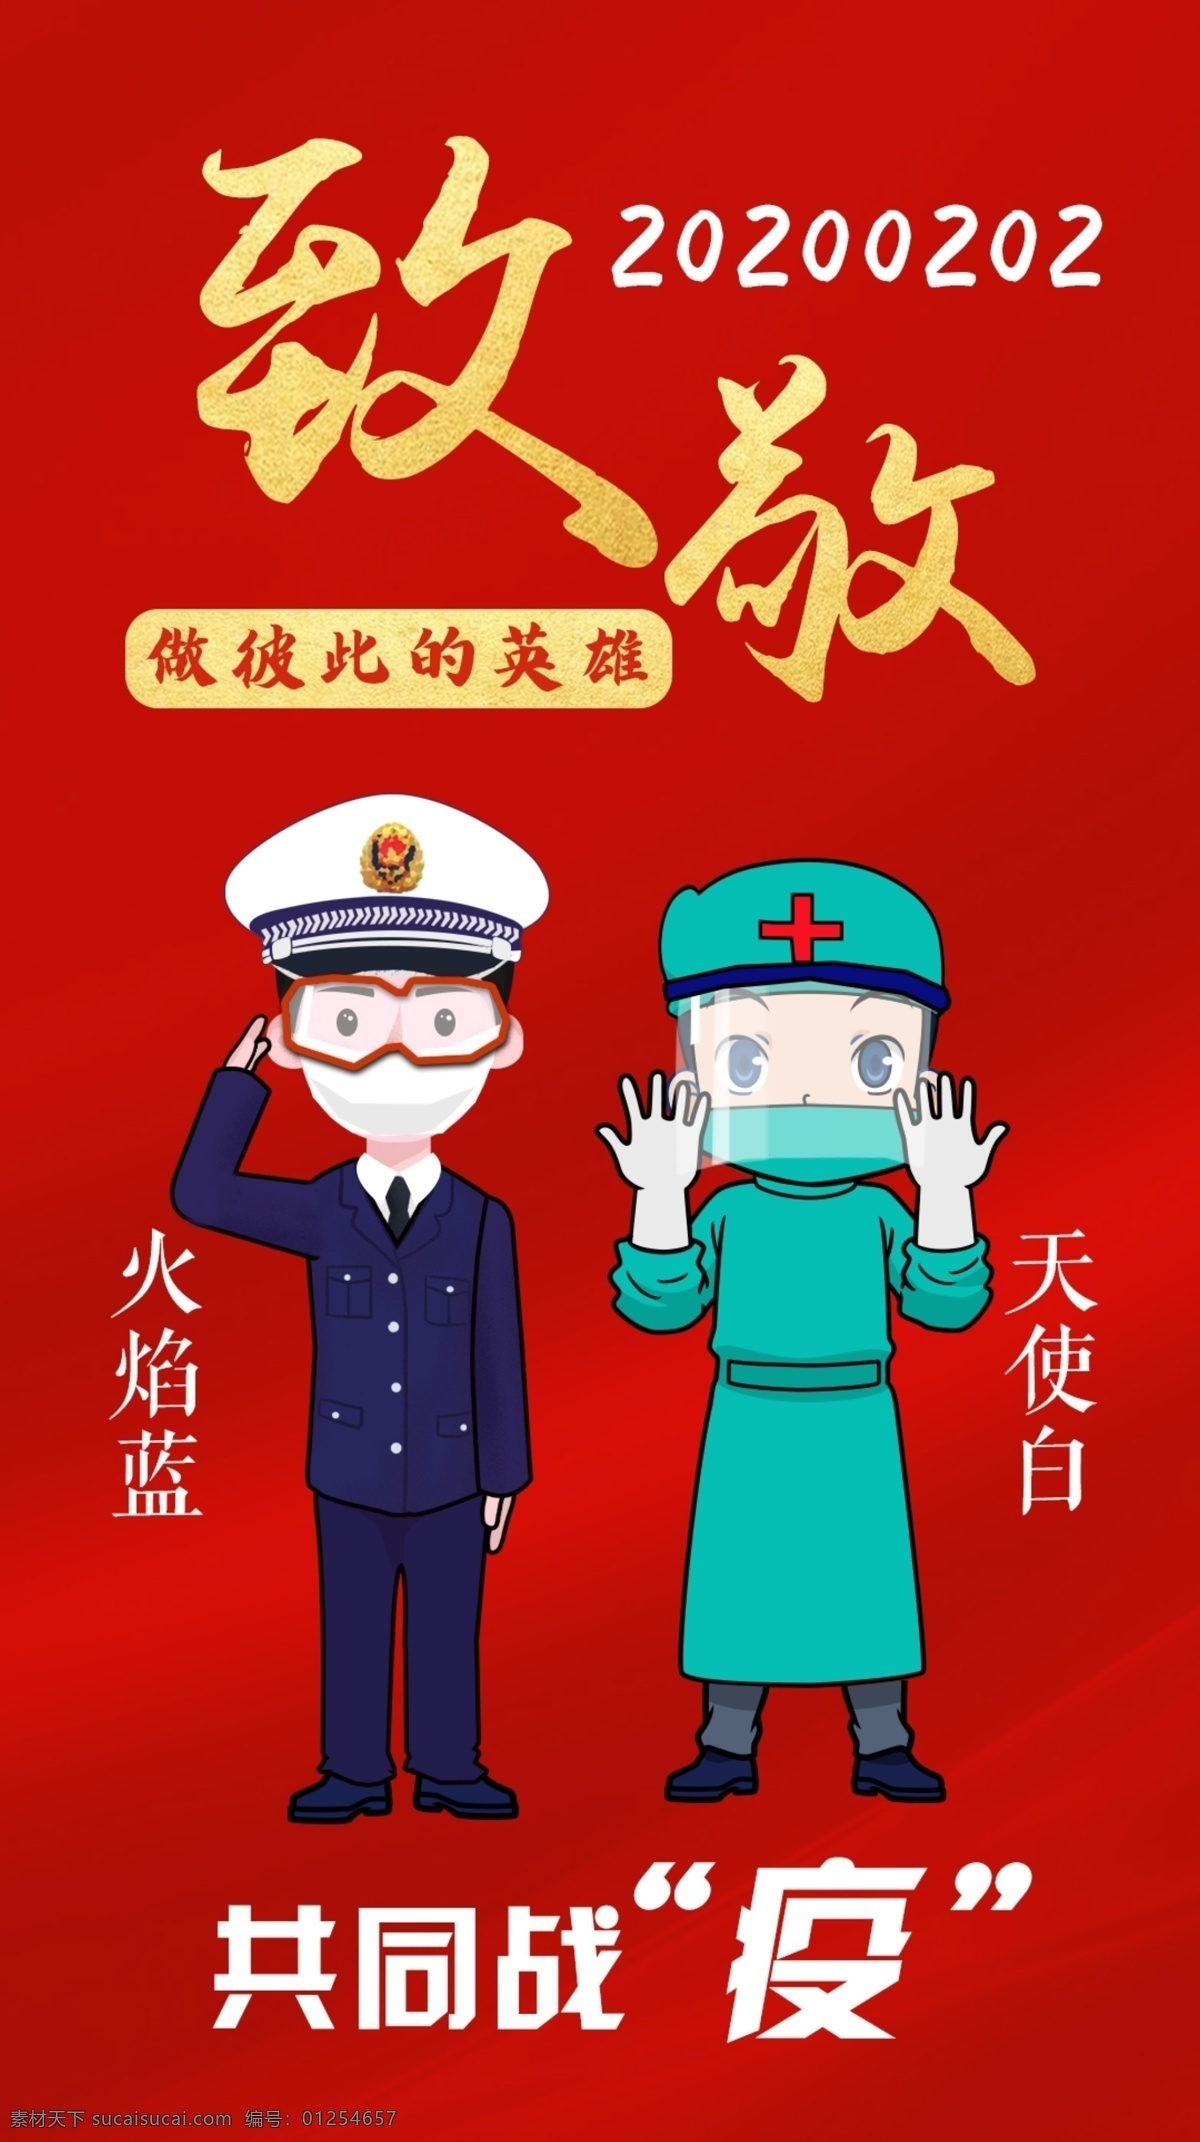 共同 战 疫 消防 护士 共同战疫 逆行者 卡通消防员 抗疫 活动布置背景 动漫动画 动漫人物